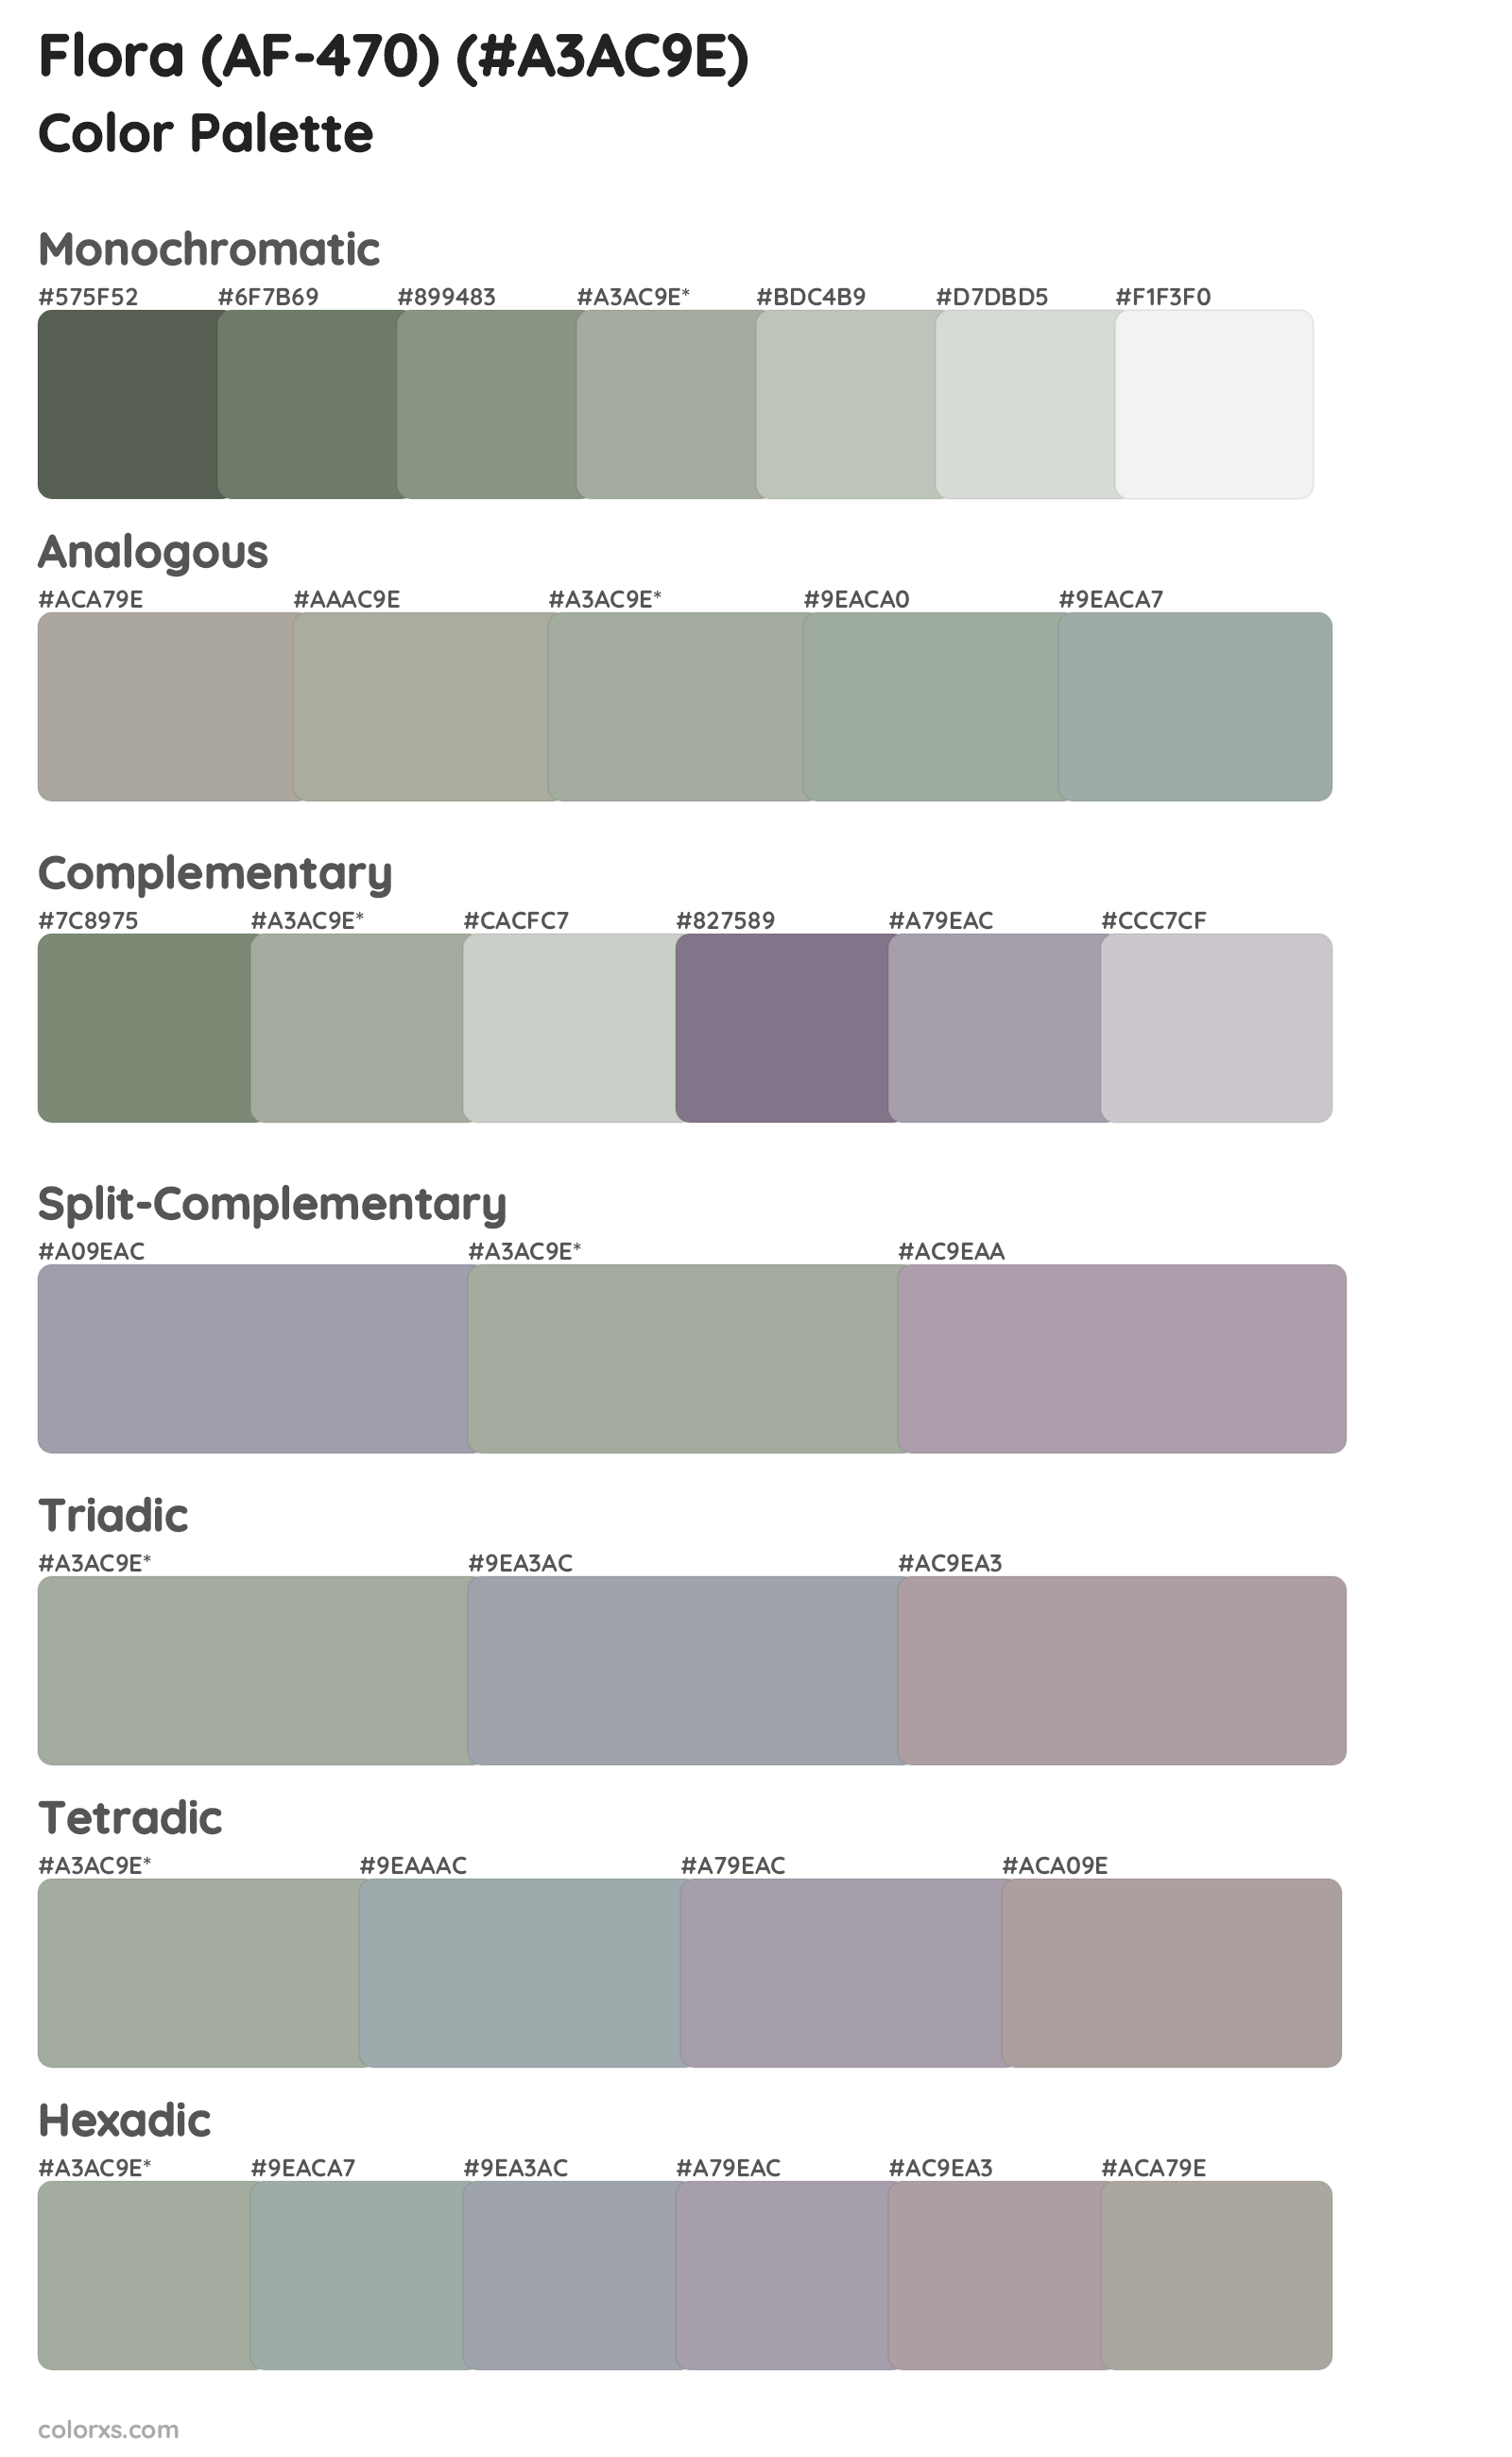 Flora (AF-470) Color Scheme Palettes